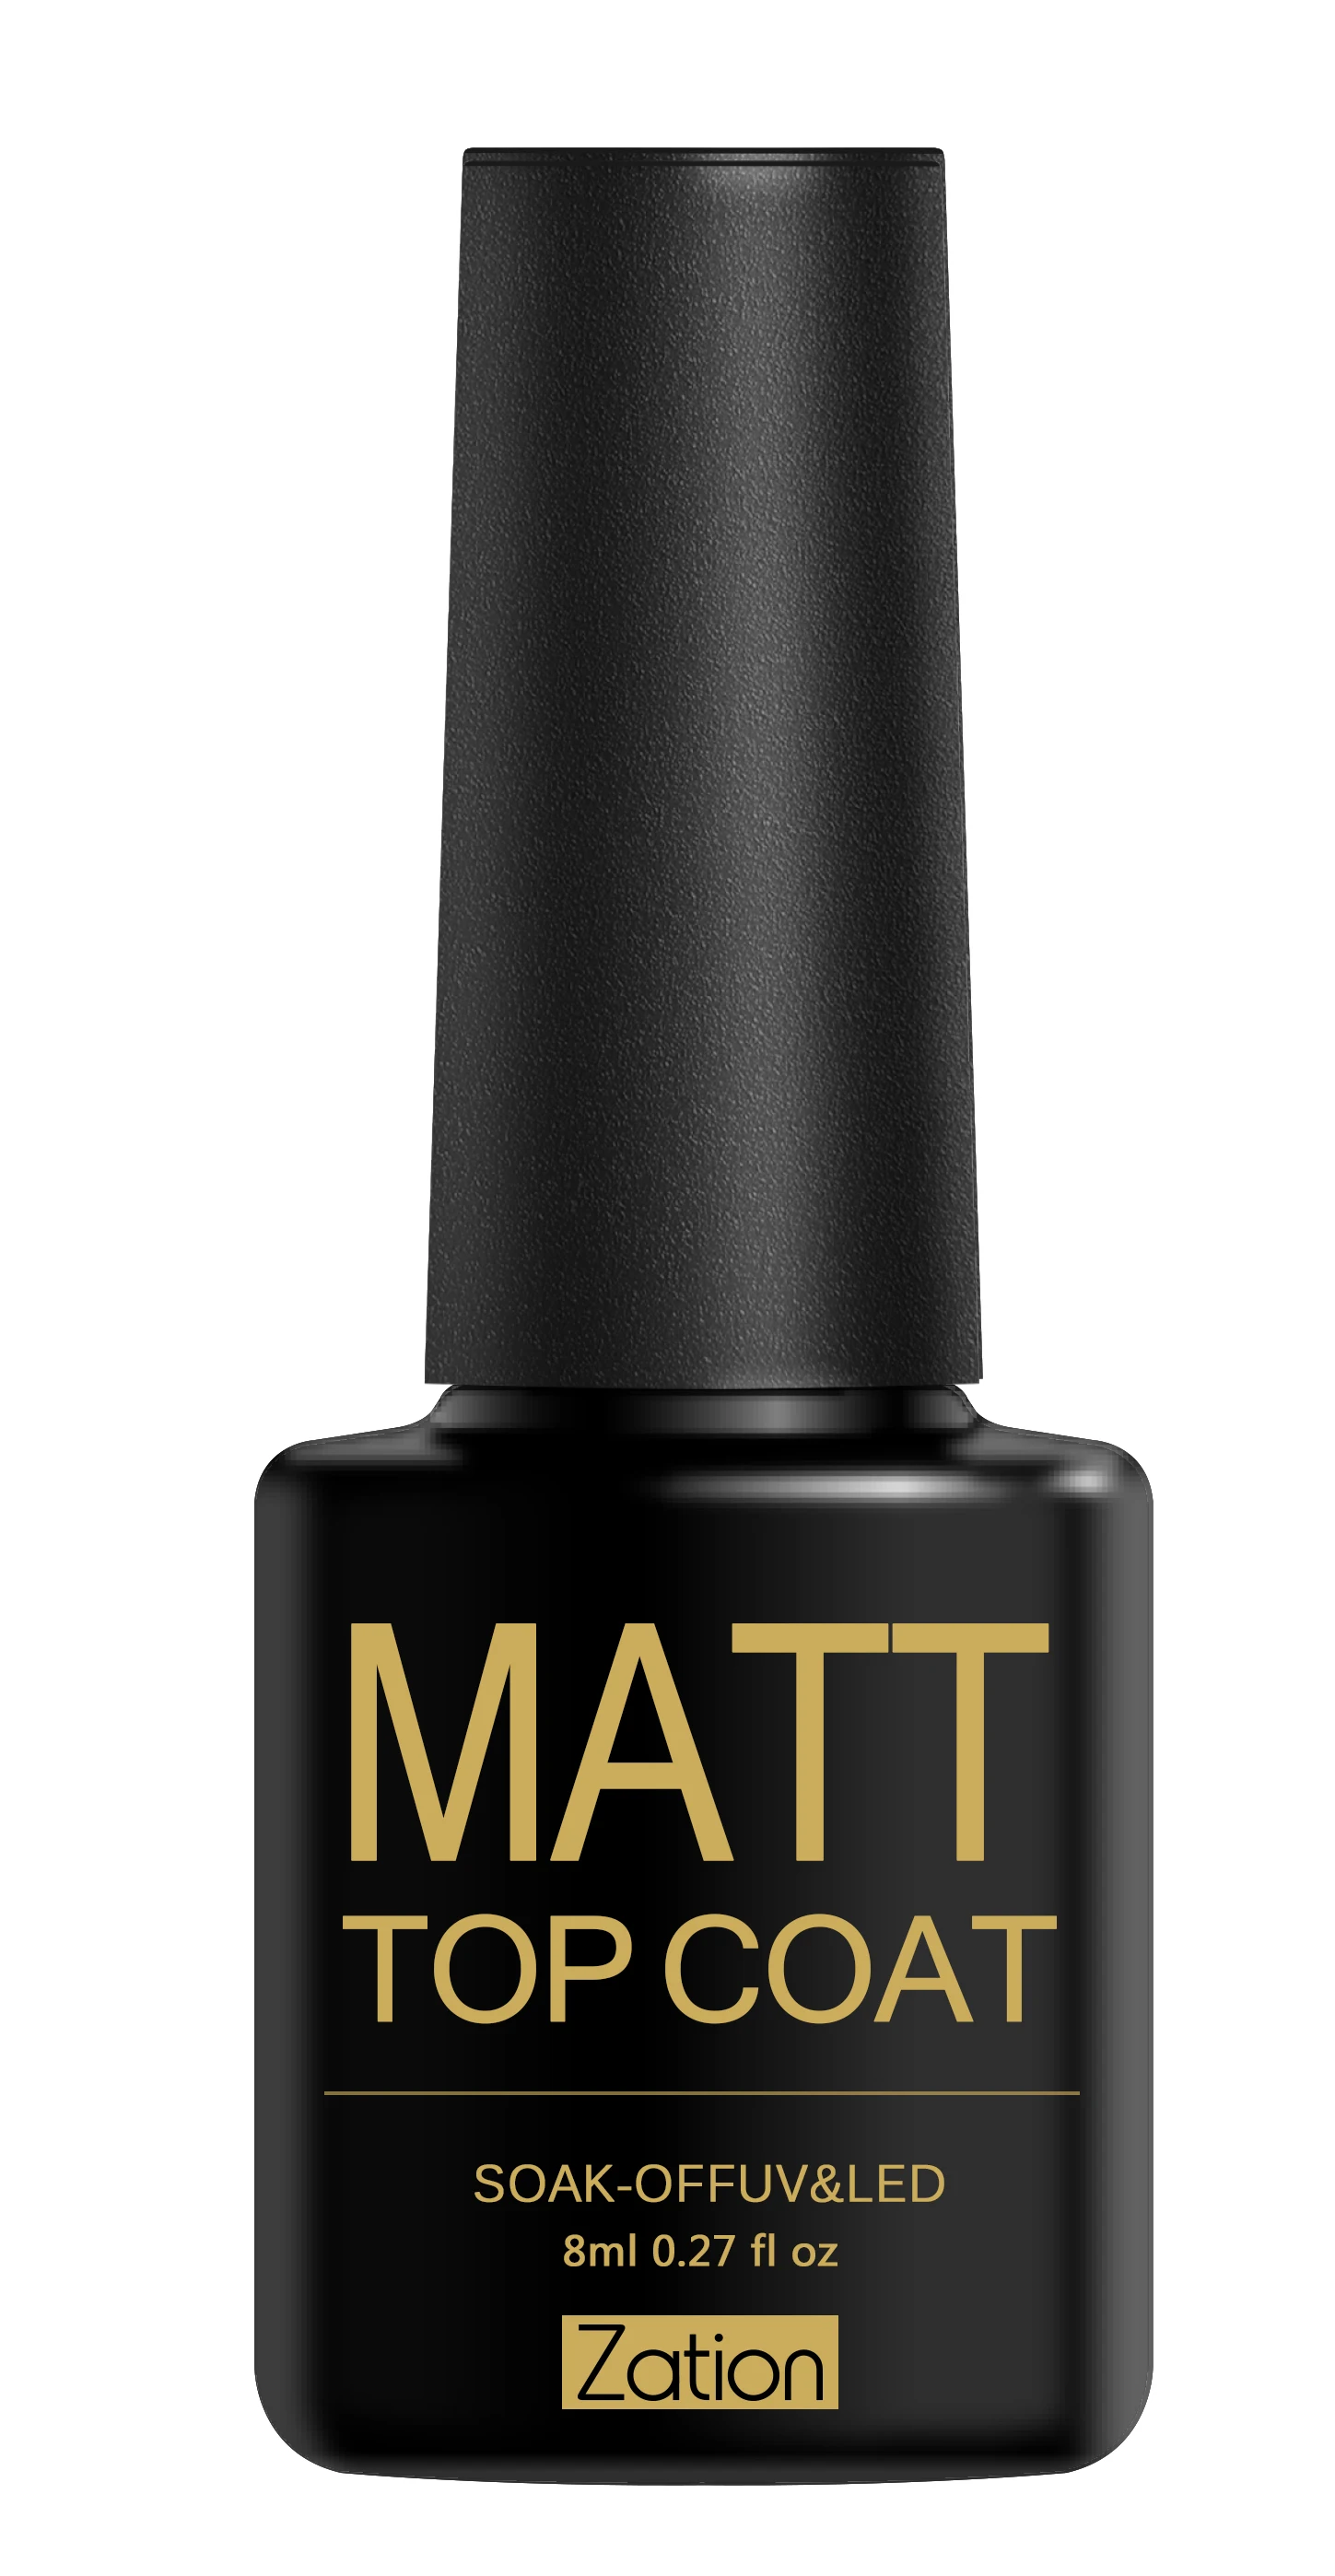 Матовый Гель-лак для ногтей, 8 мл, тусклый матовый лак для ногтей Vernis, матовый лак для ногтей, матовая Чистящая основа и верхний клей - Цвет: Matt Top Coat